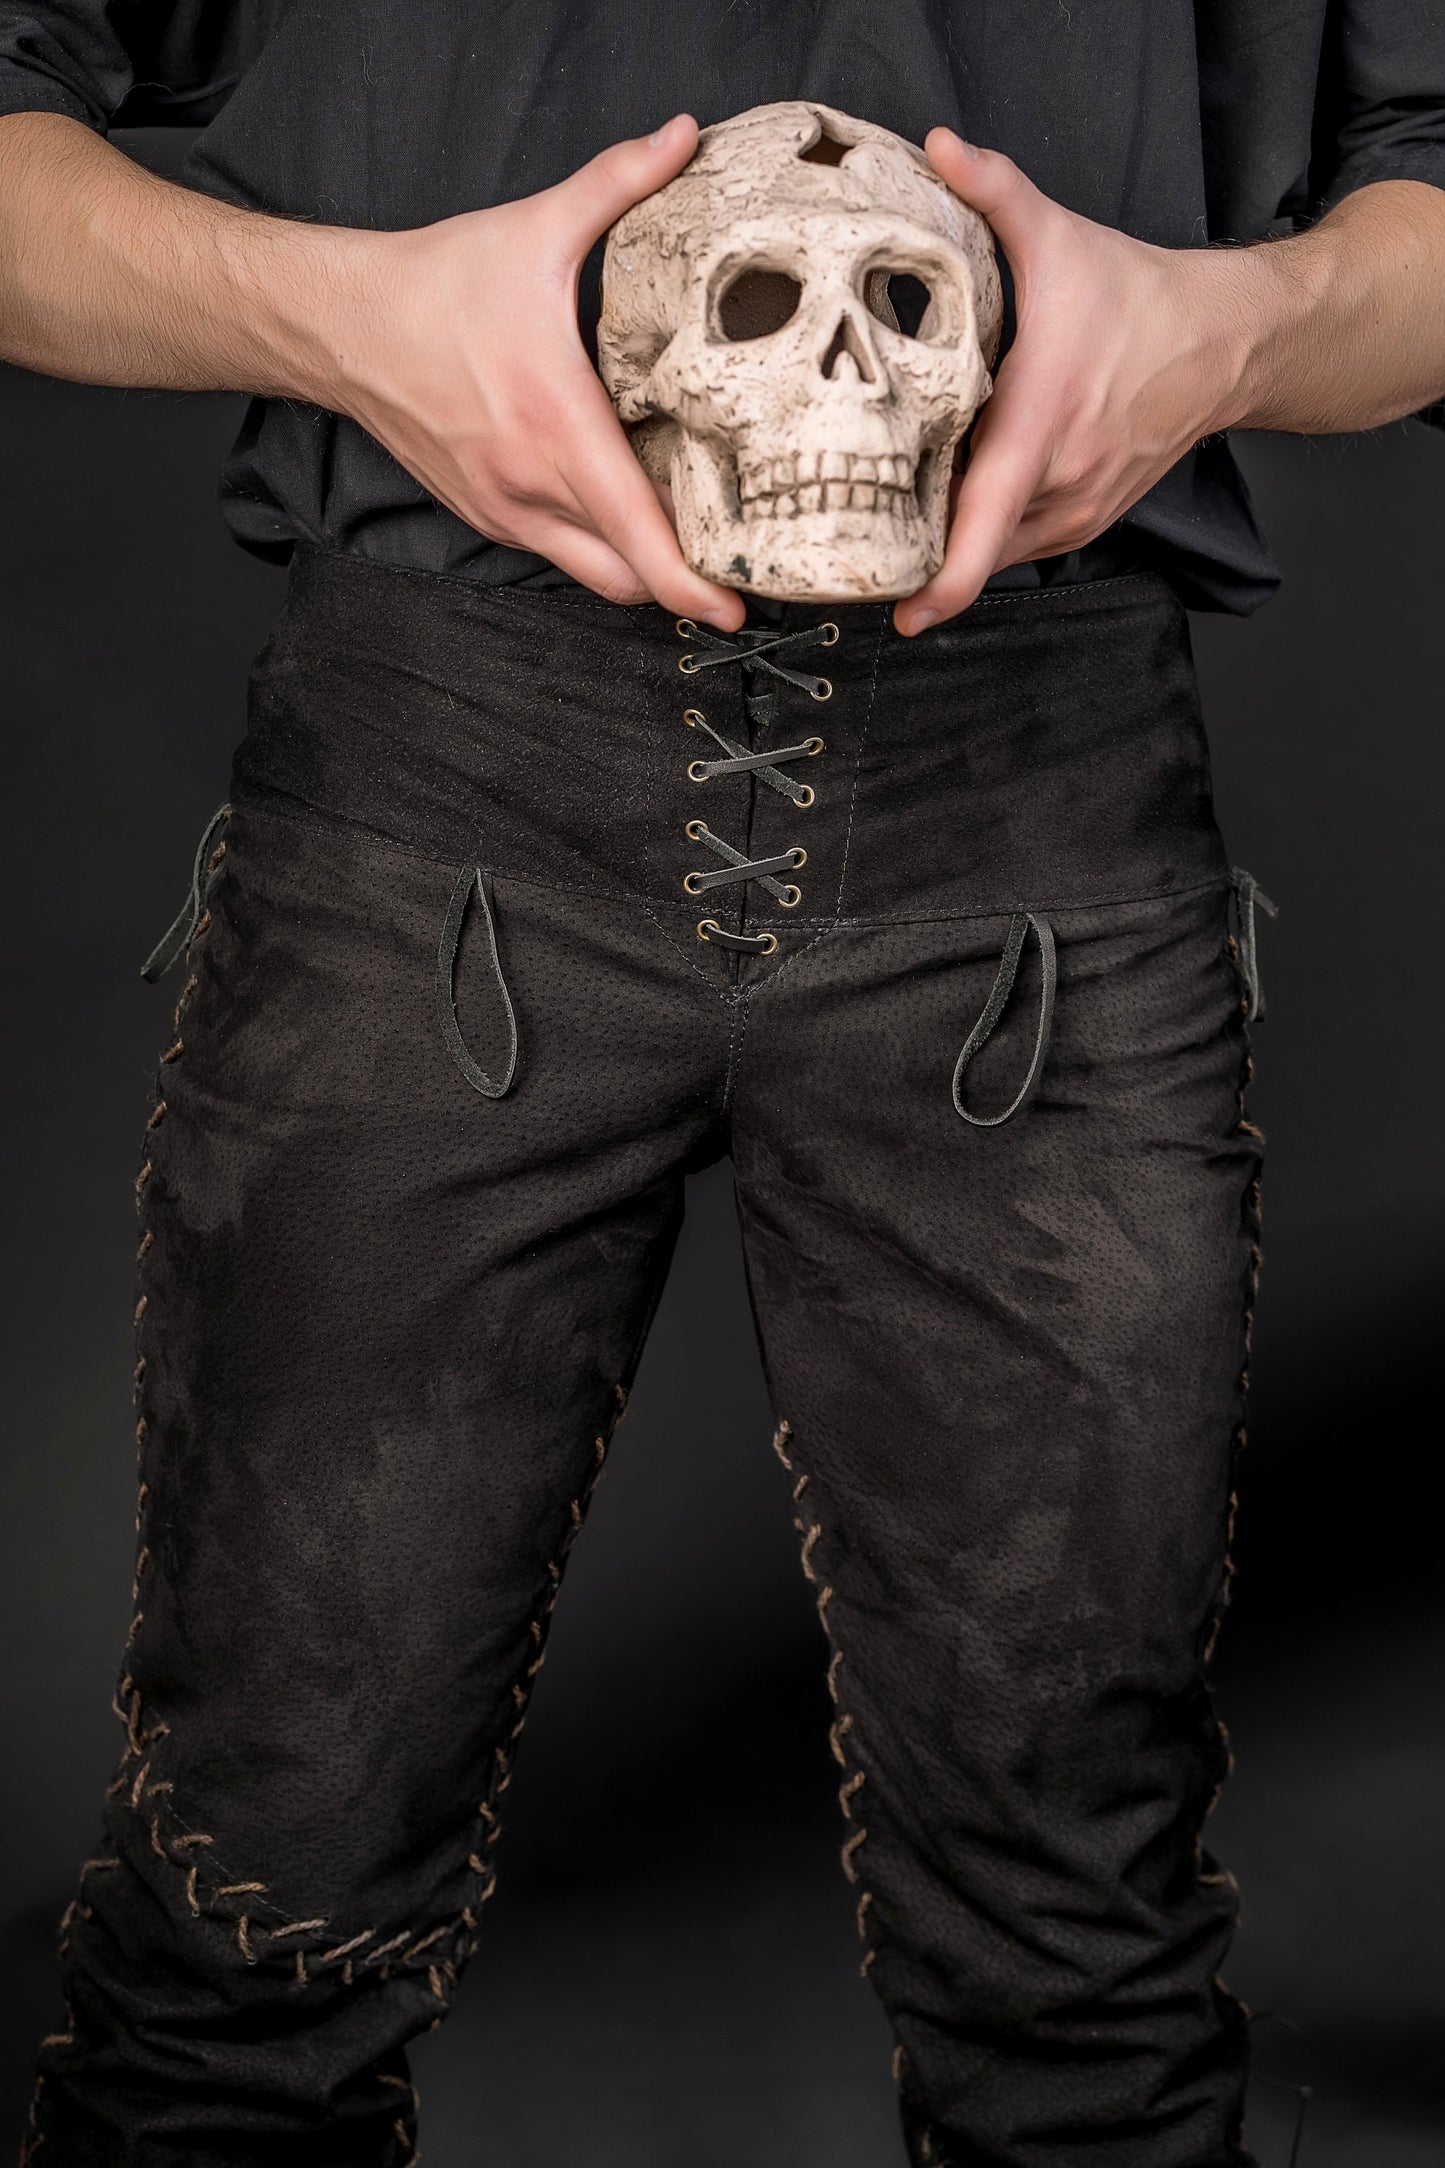 Viking black leather pants